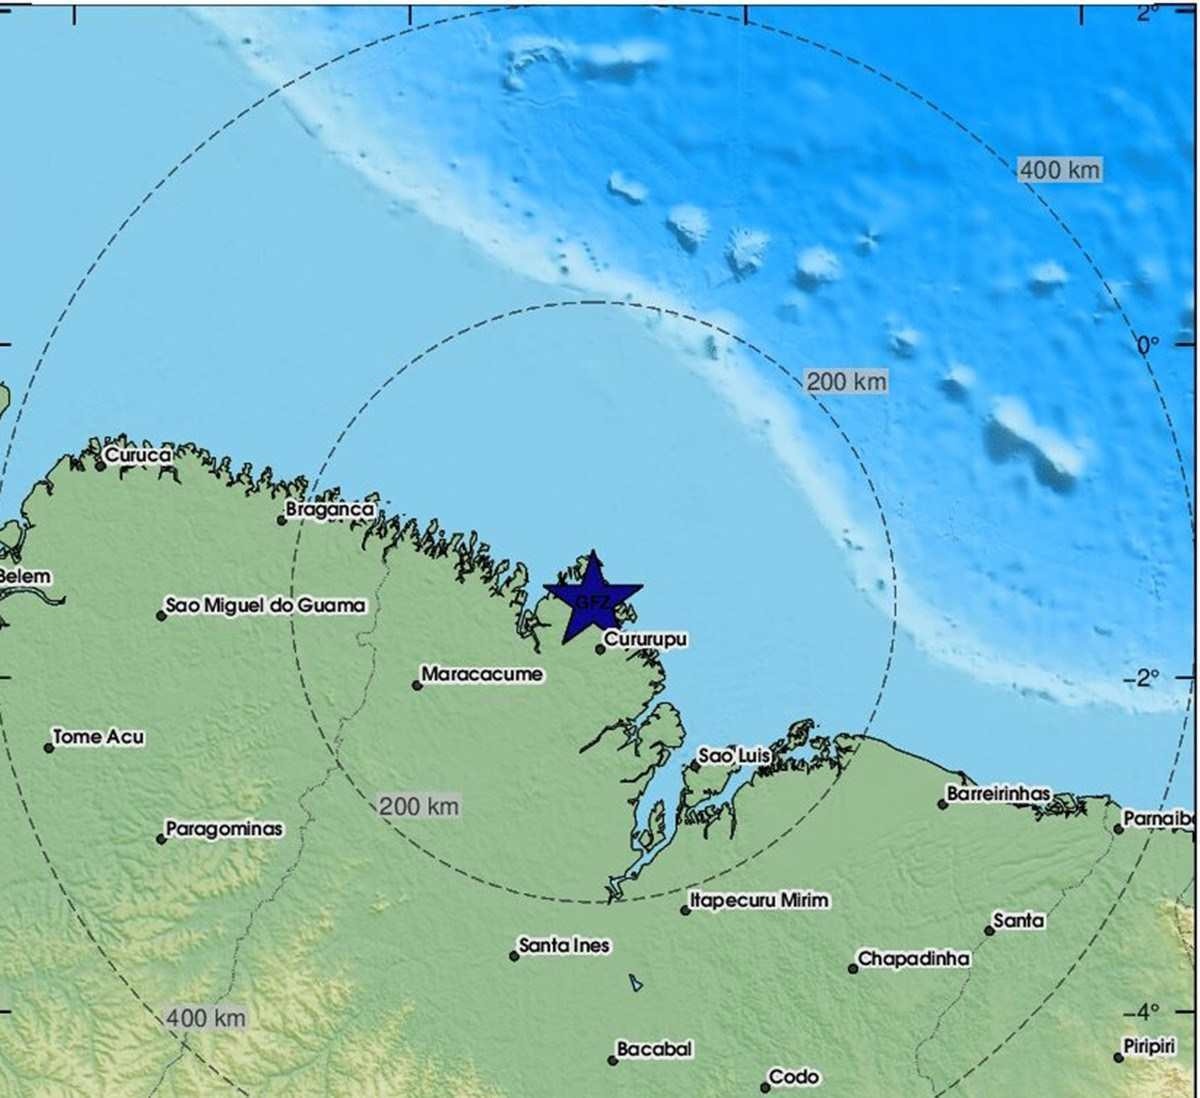 Rede Sismográfica Brasileira diz que suposto tremor no Maranhão foi erro de algoritmo